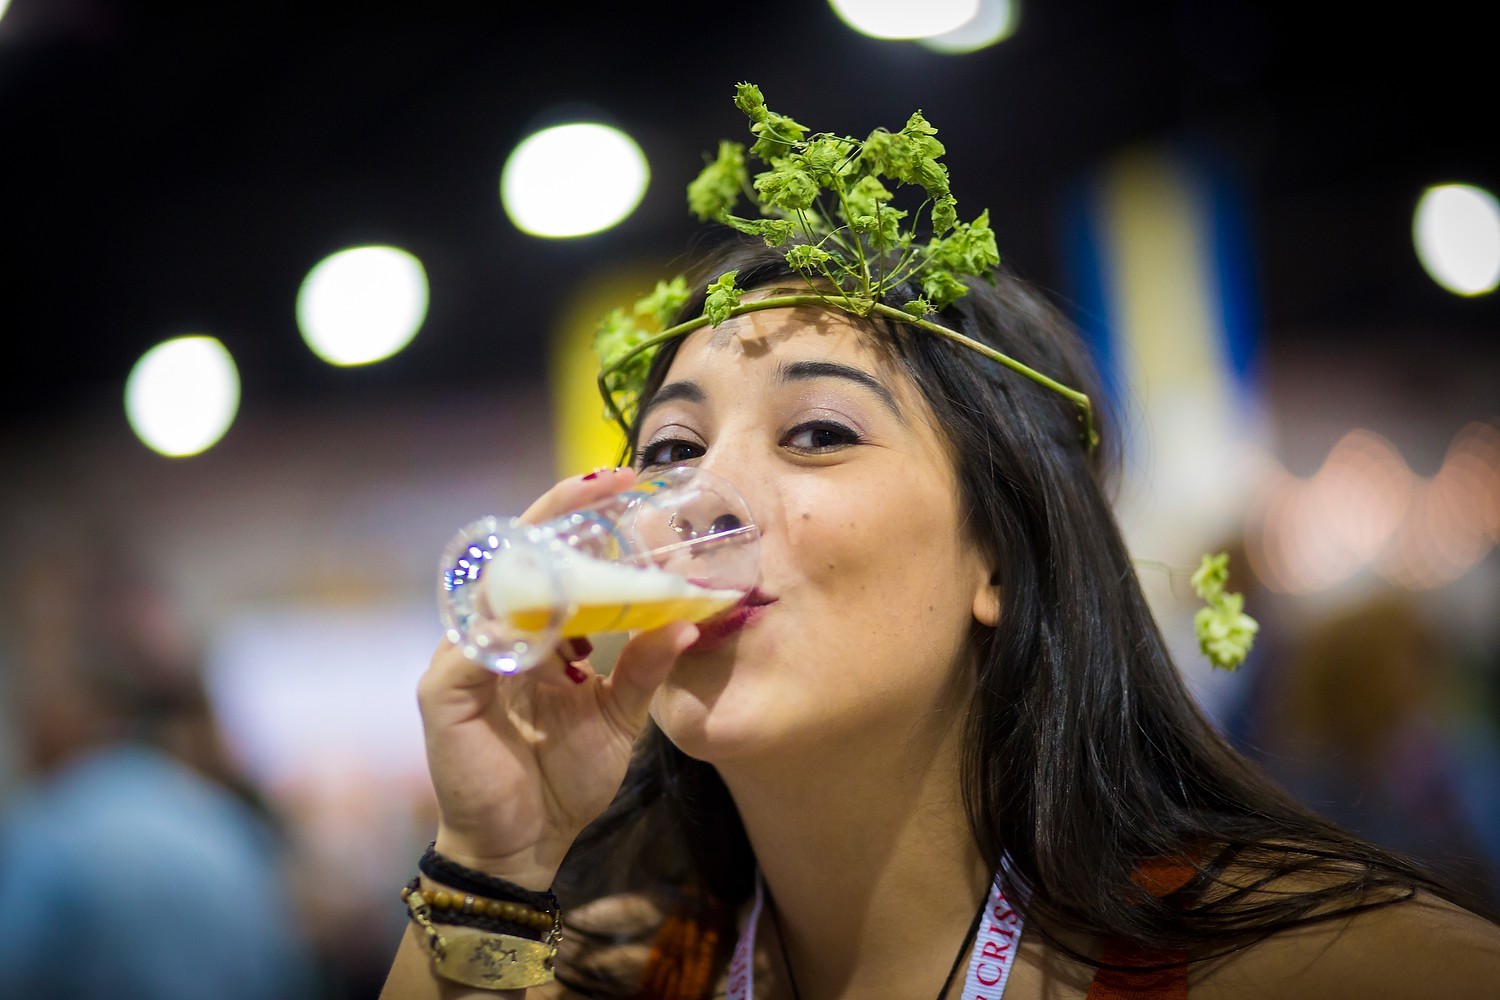 Italia: la birra è sempre più apprezzata dalle donne